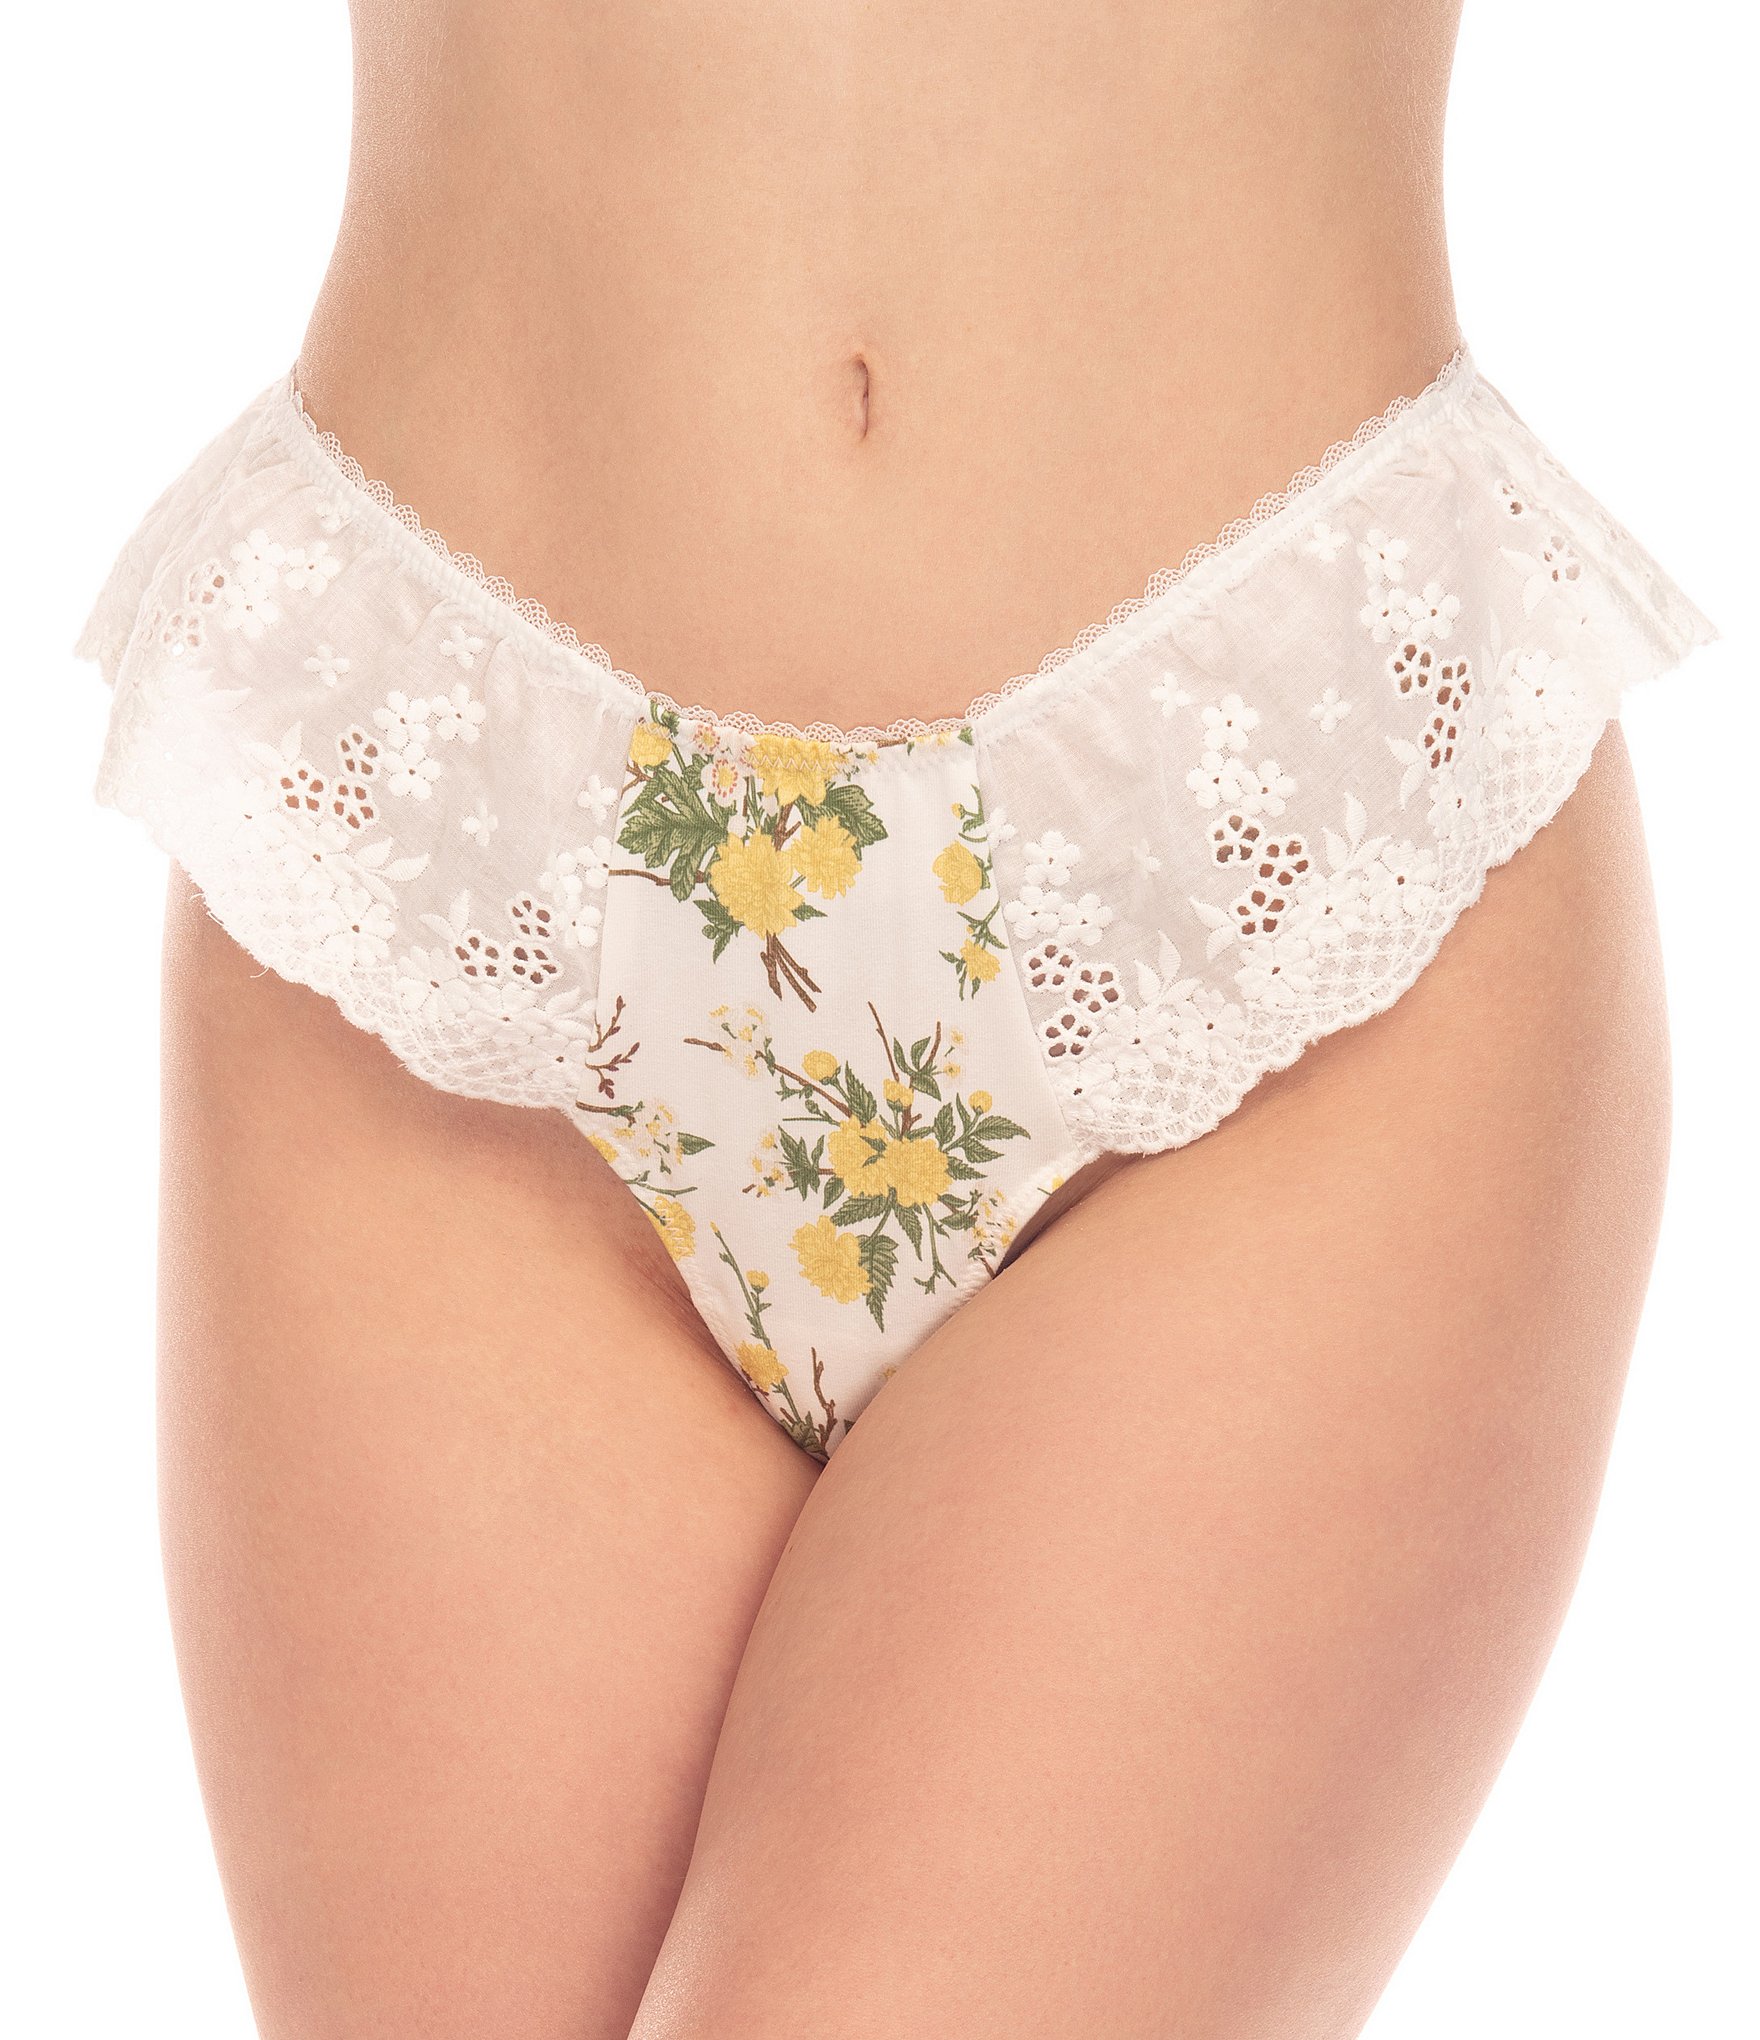 Honeydew Intimates Floral Lingerie : Pajamas, Bras, & Panties